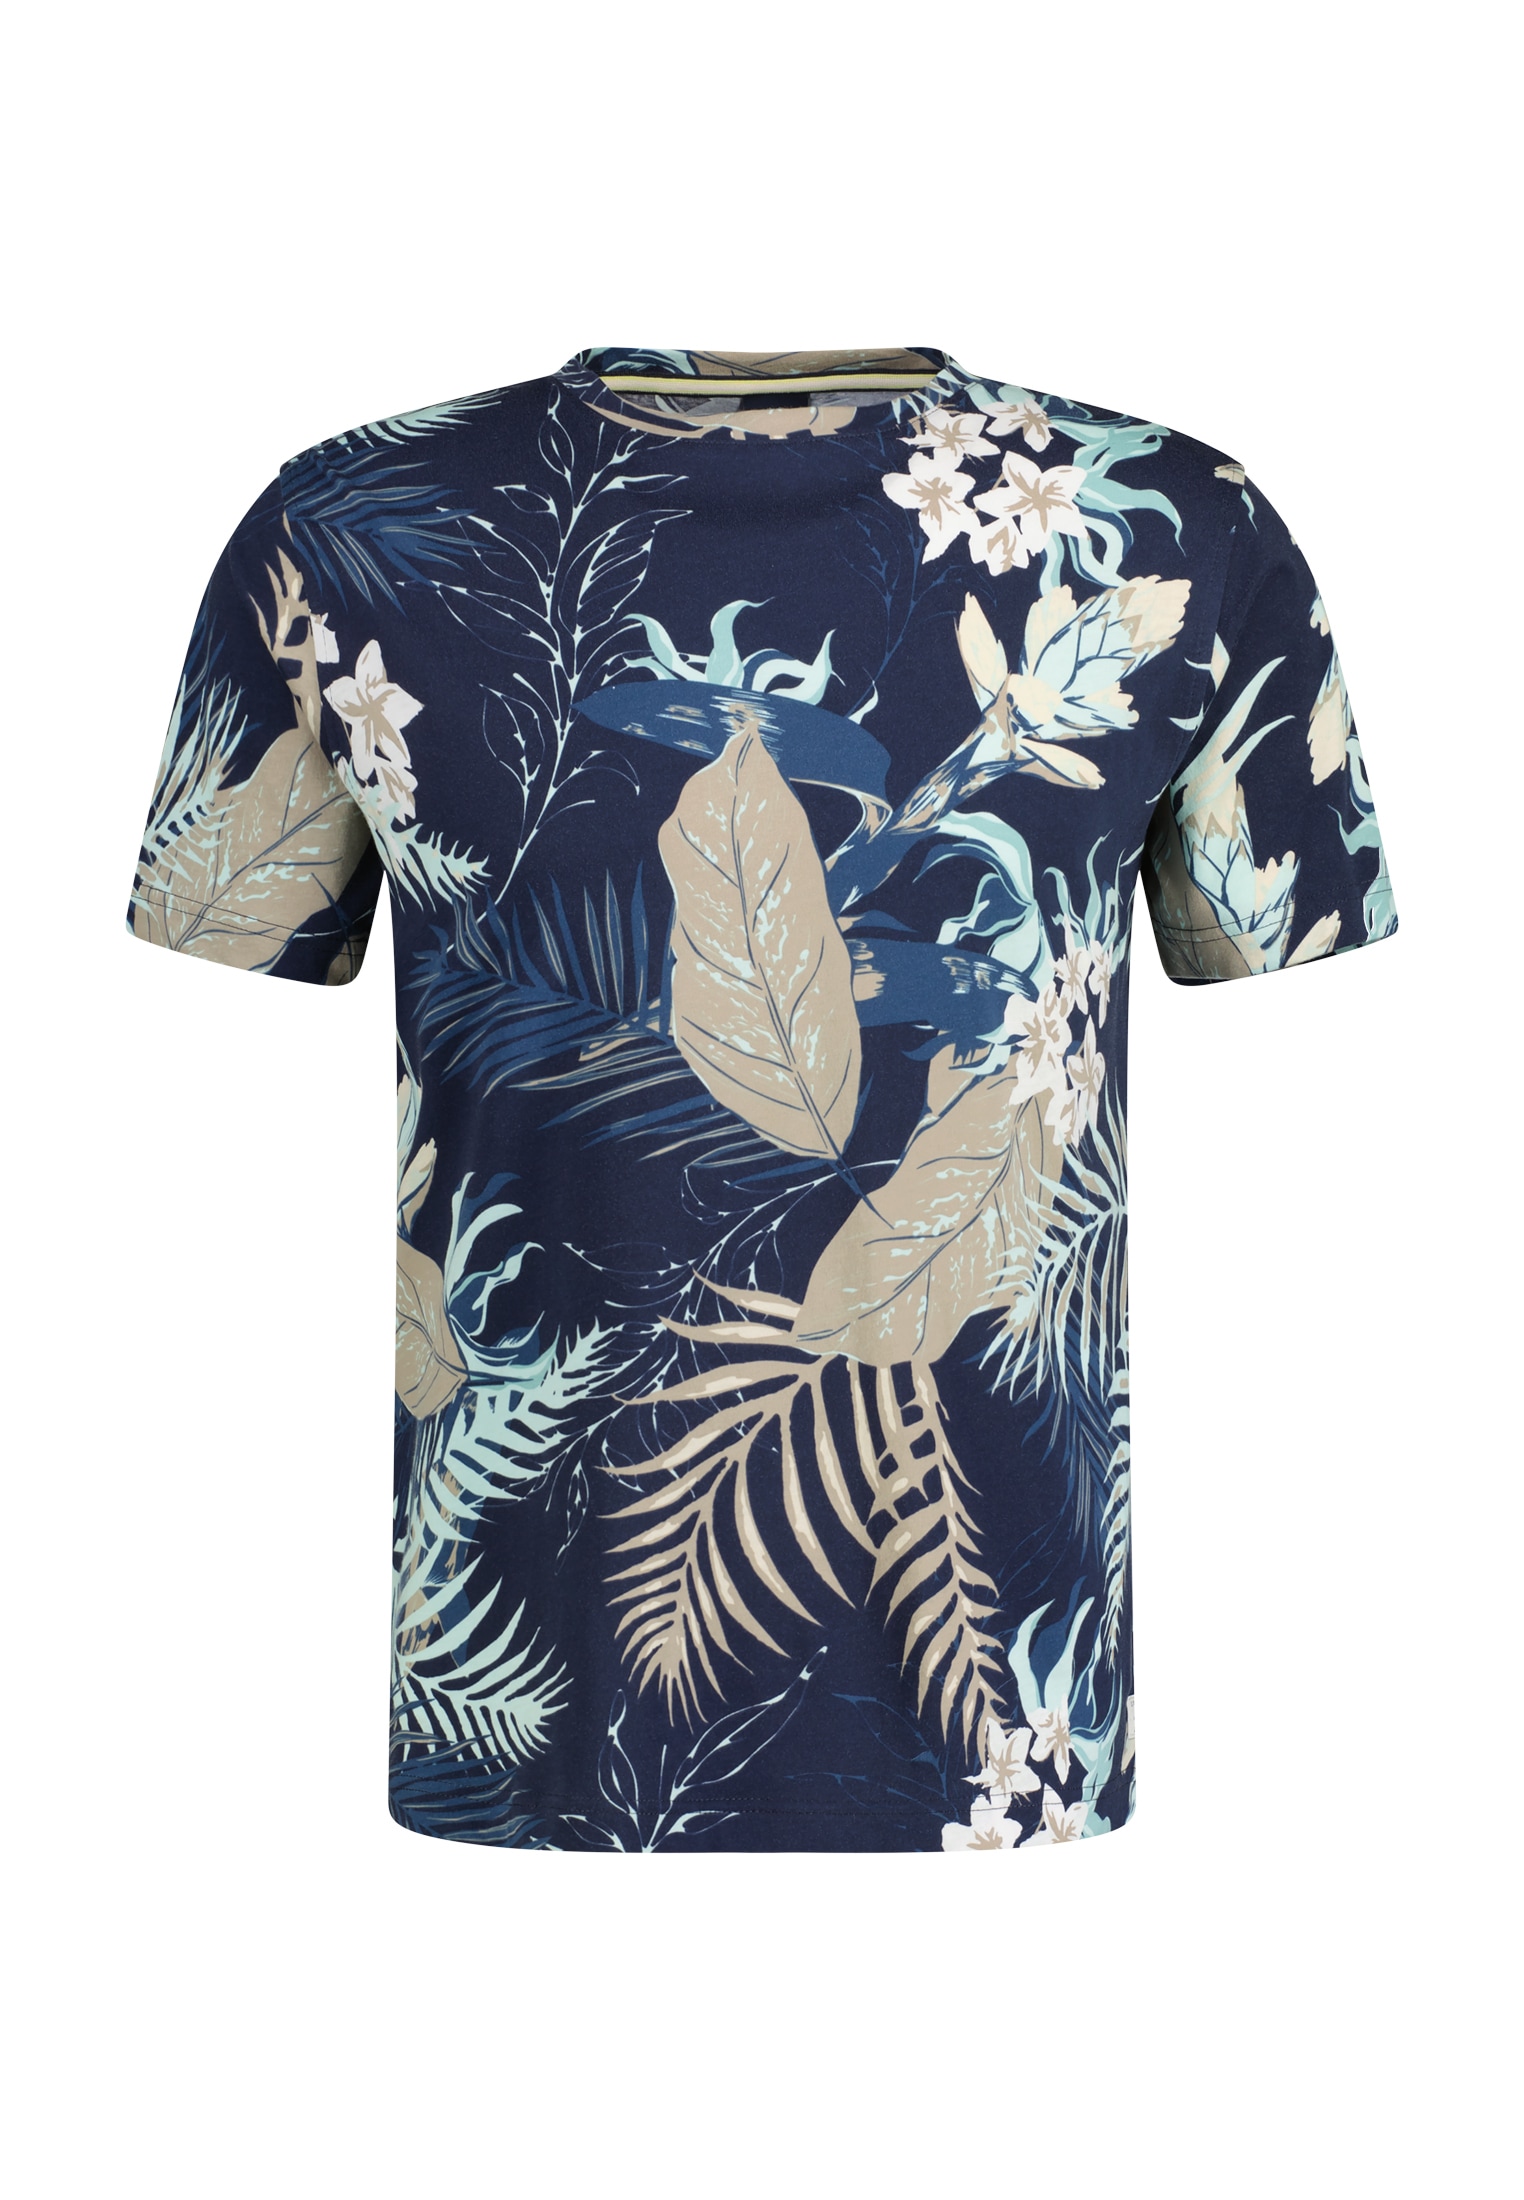 »LERROS *Hawaii*« T-Shirt T-Shirt online kaufen LERROS